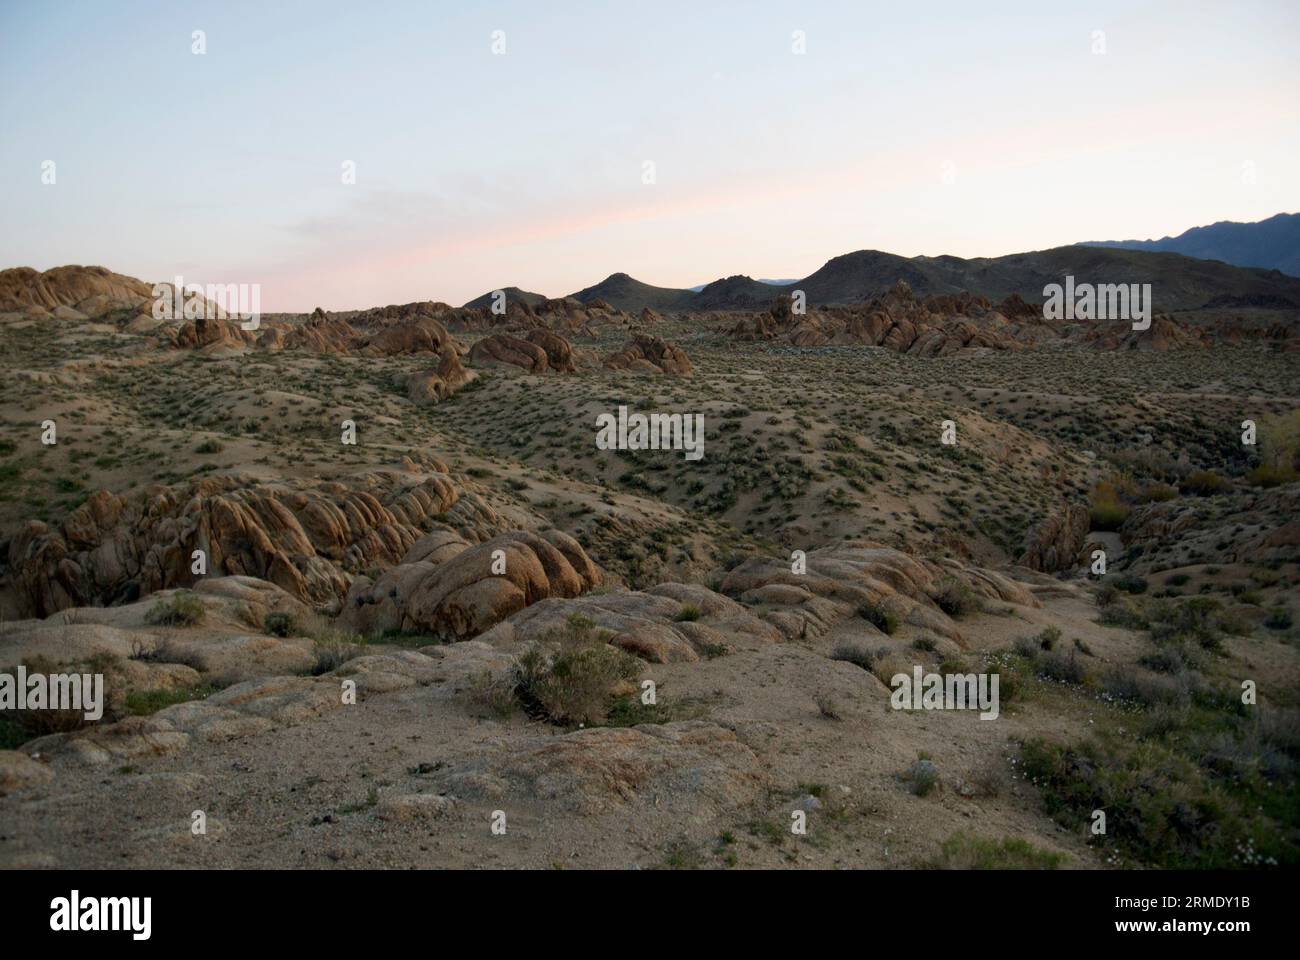 Day break over an arid desert landscape. Stock Photo